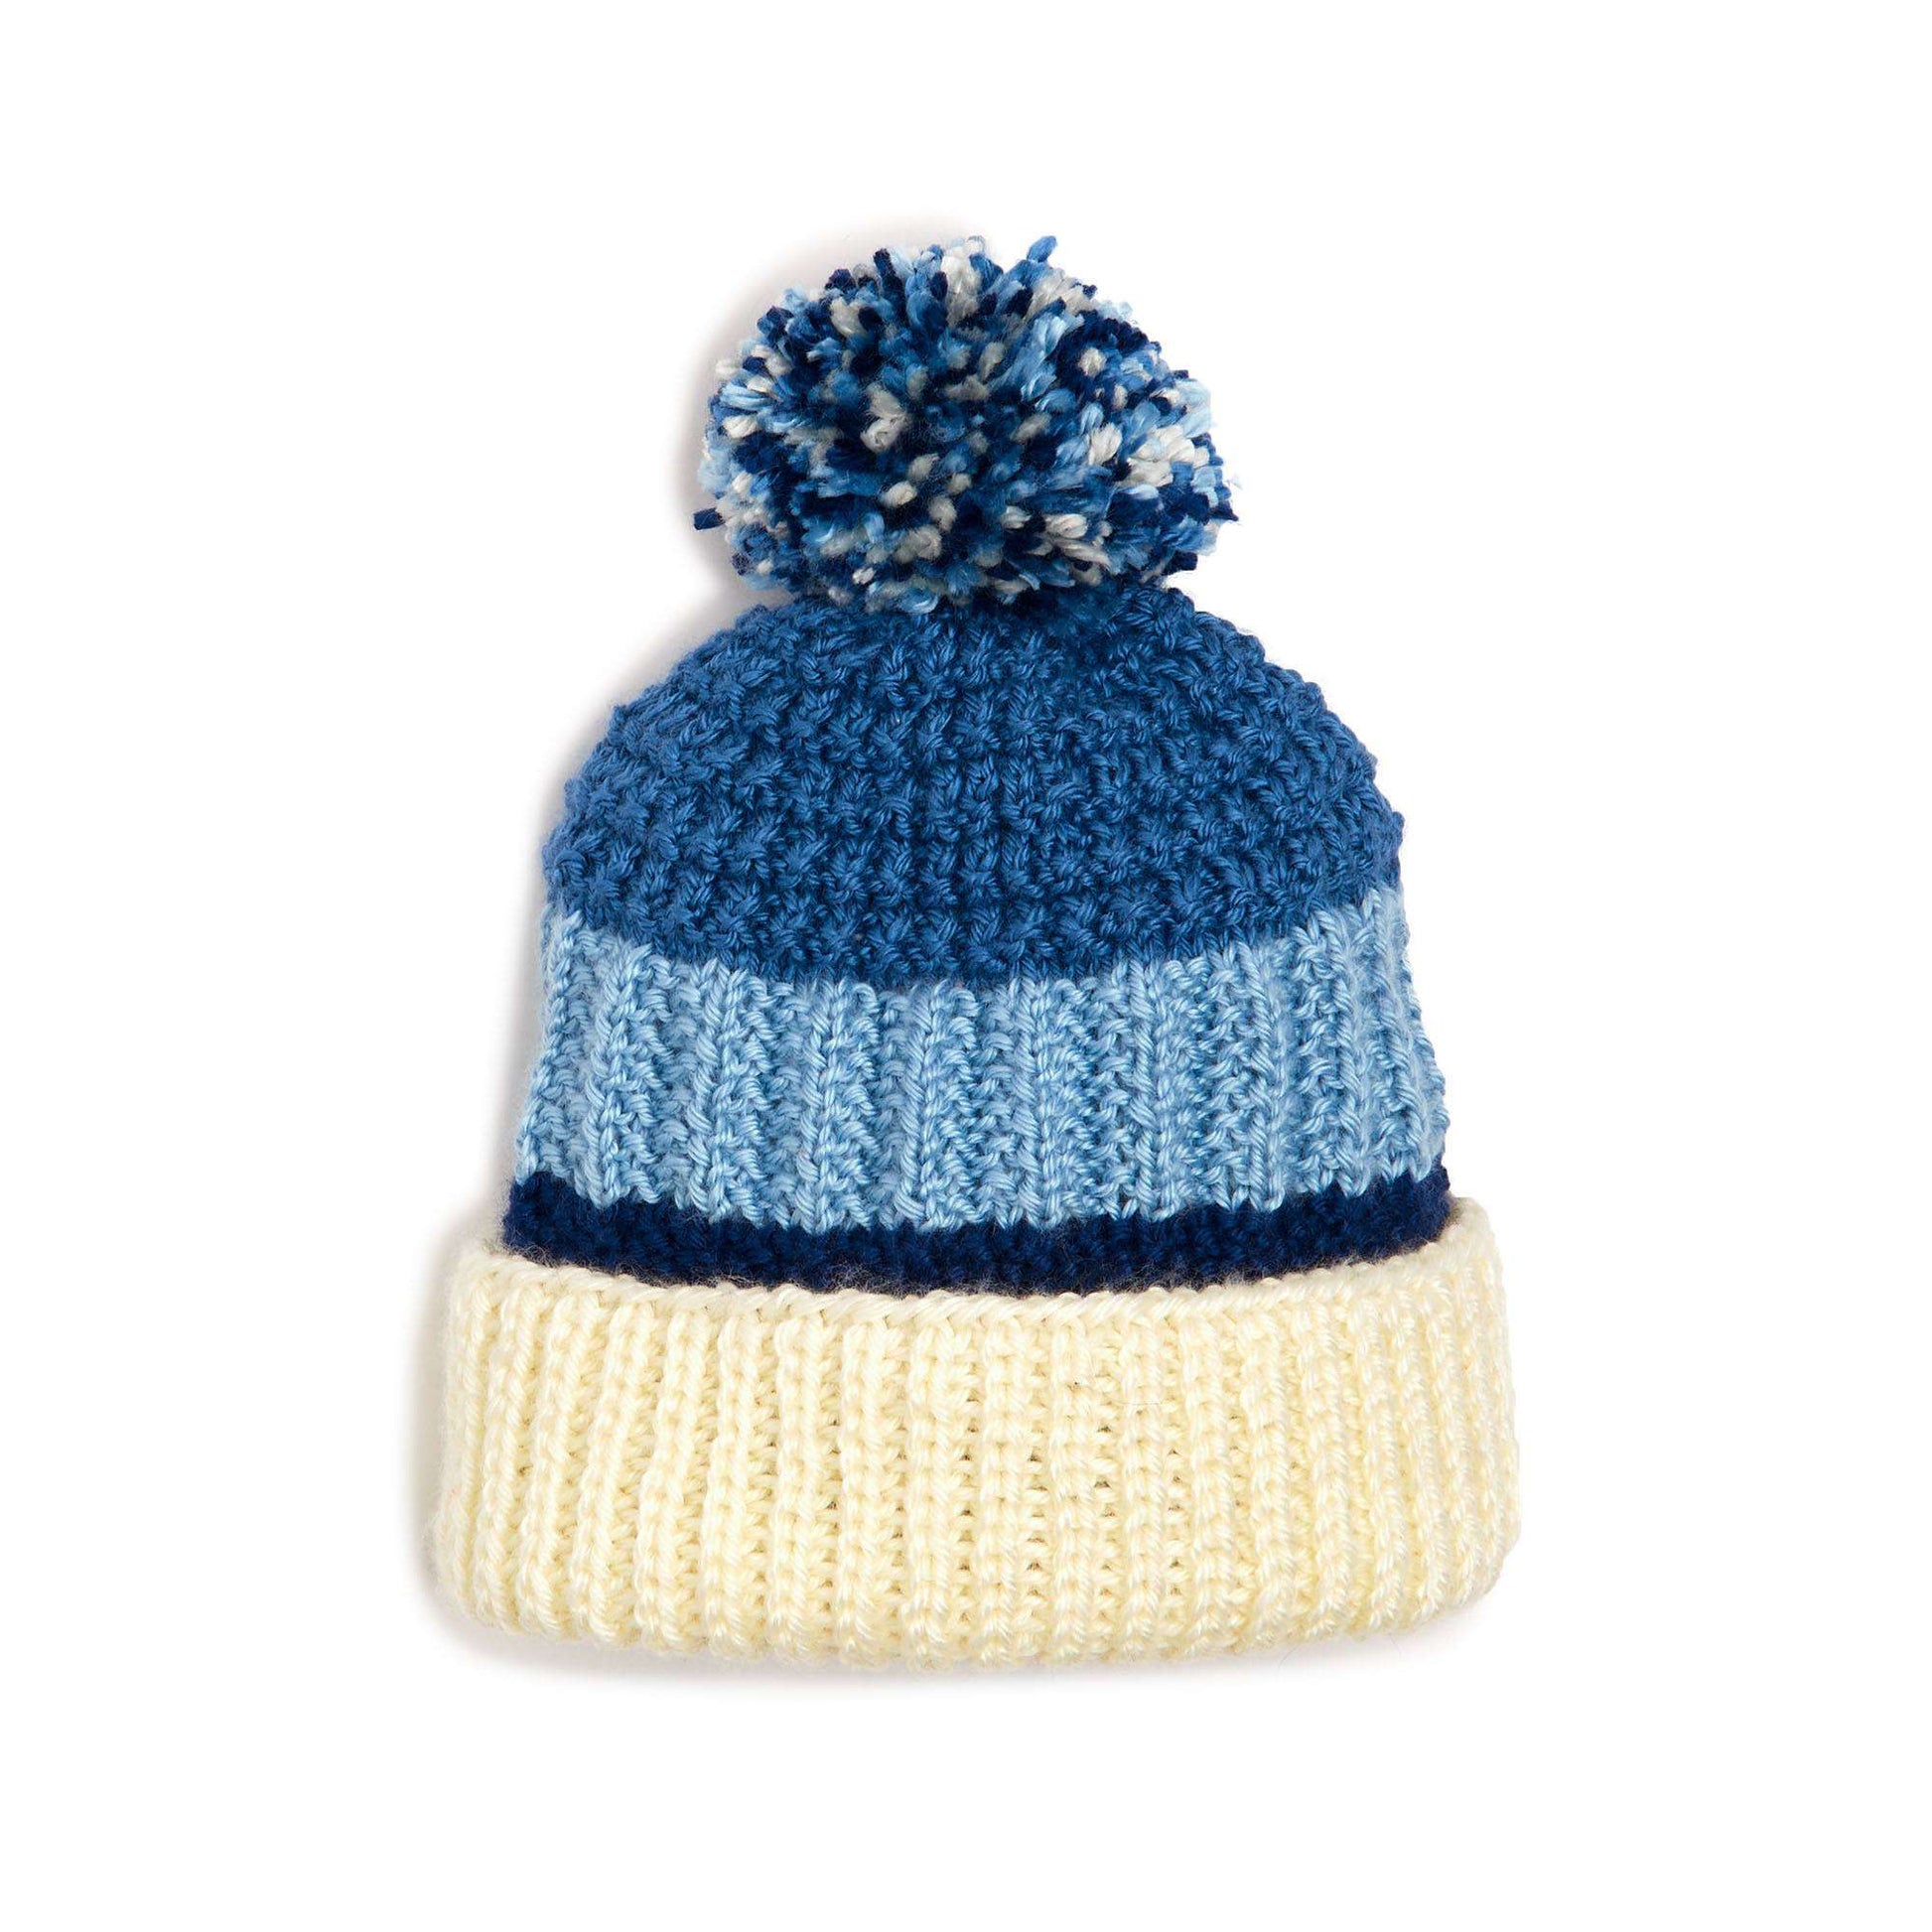 Free Caron Textured Knit Hat Pattern